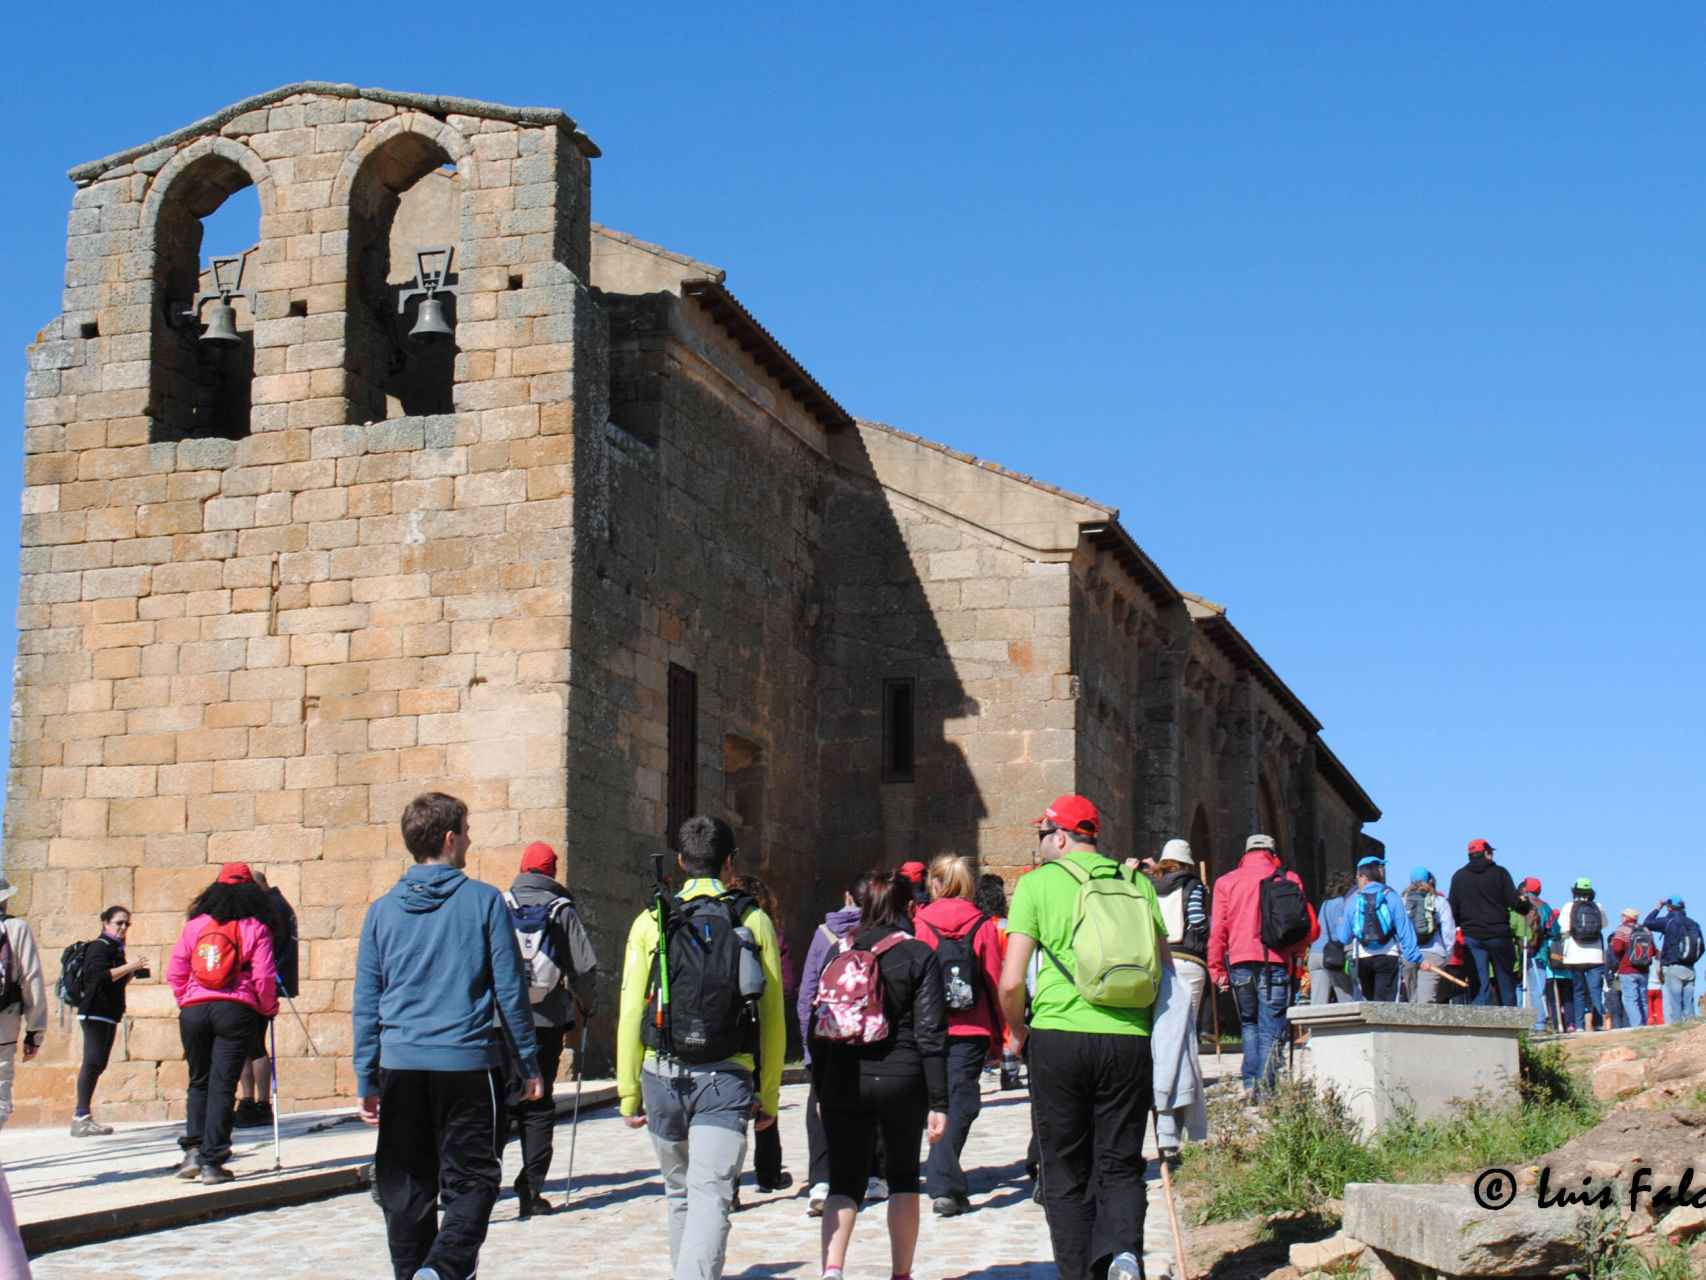 Los caminantes acceden al teso de San Pedro, donde se encuentra la ermita románica del Cristo